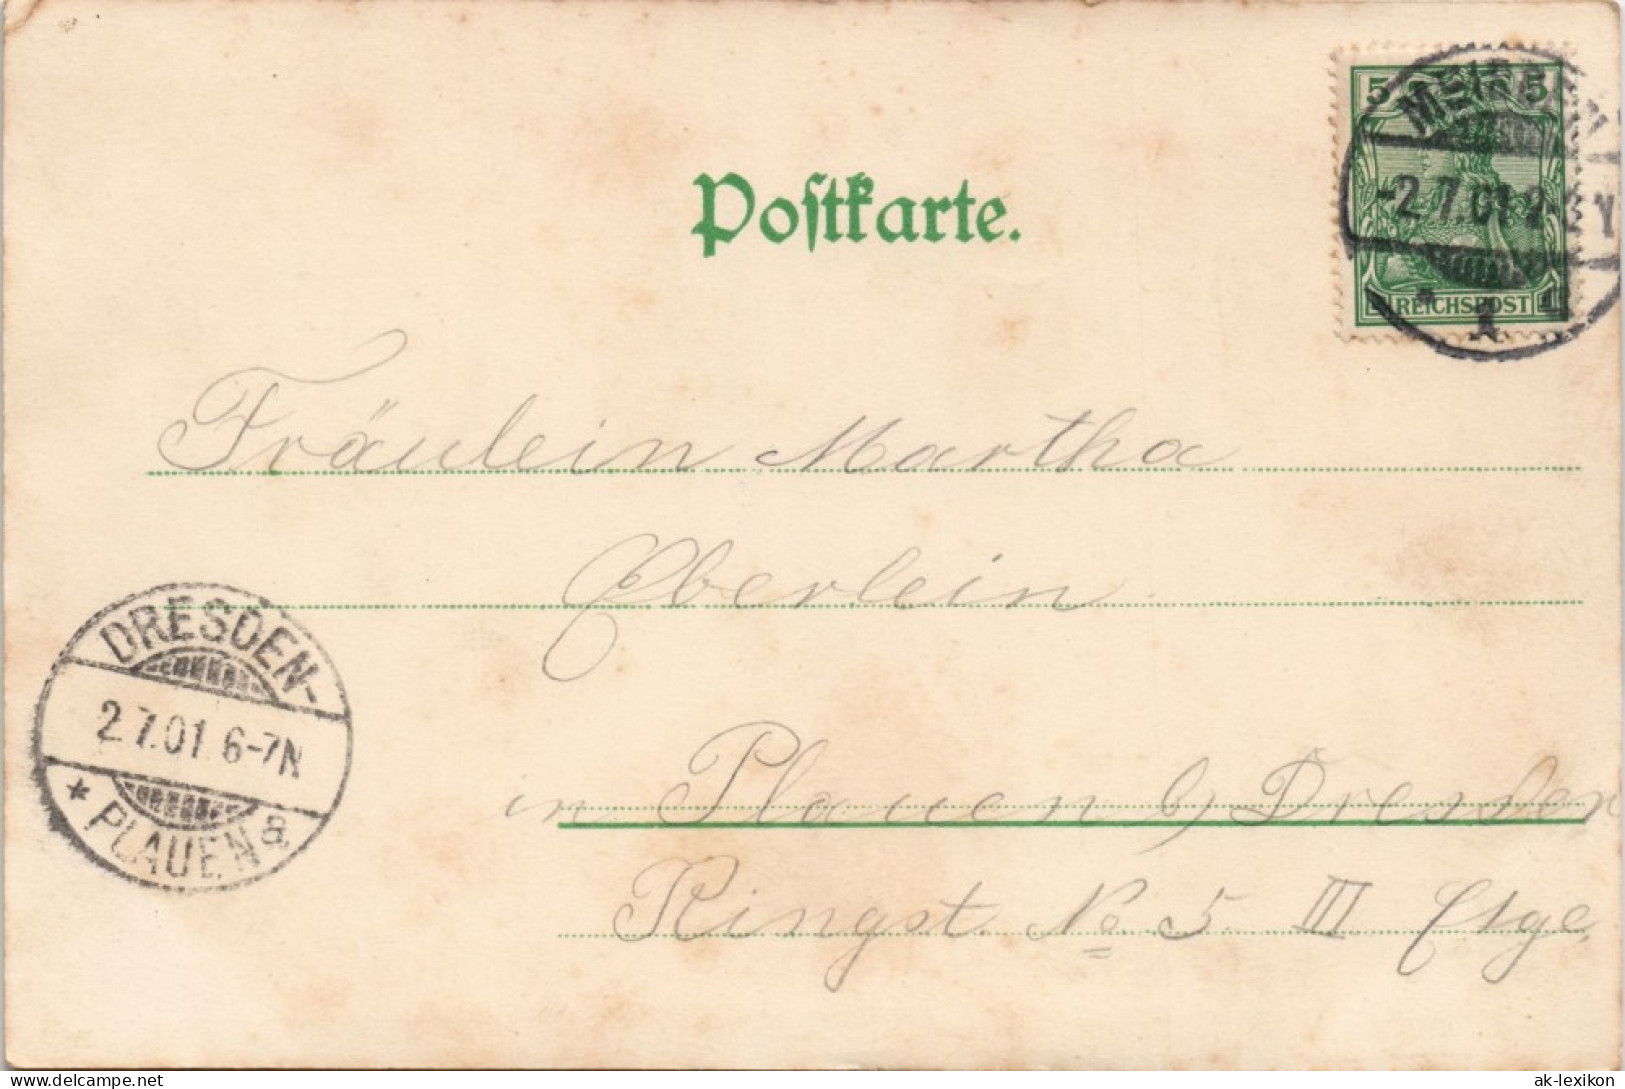 Ansichtskarte Meißen Der Schloßberg Und Dom 1901 - Meissen